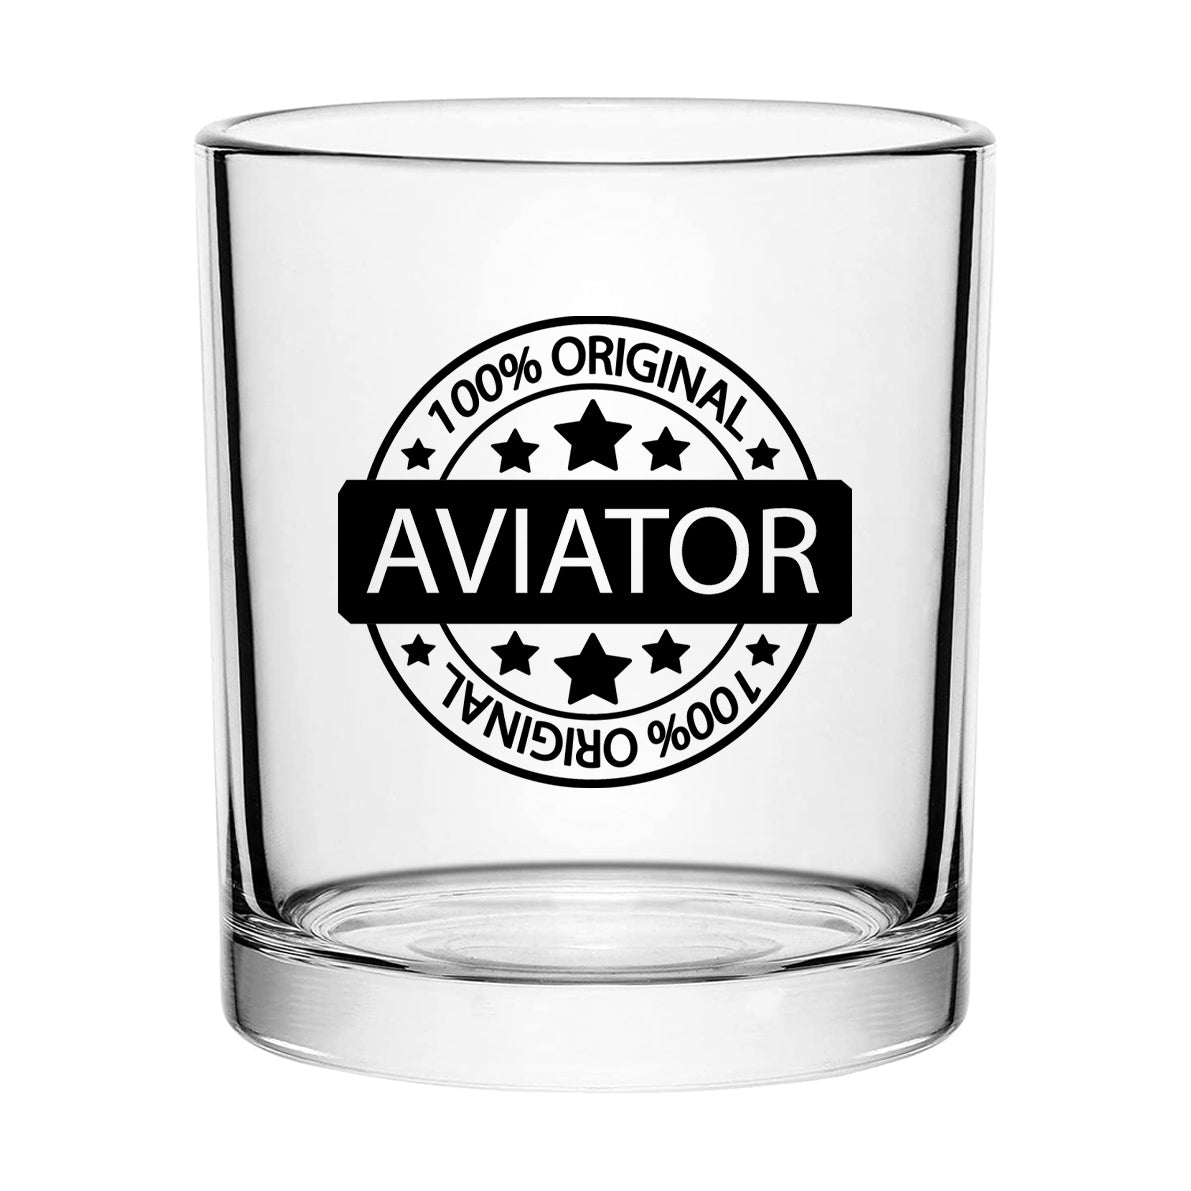 %100 Original Aviator Designed Special Whiskey Glasses